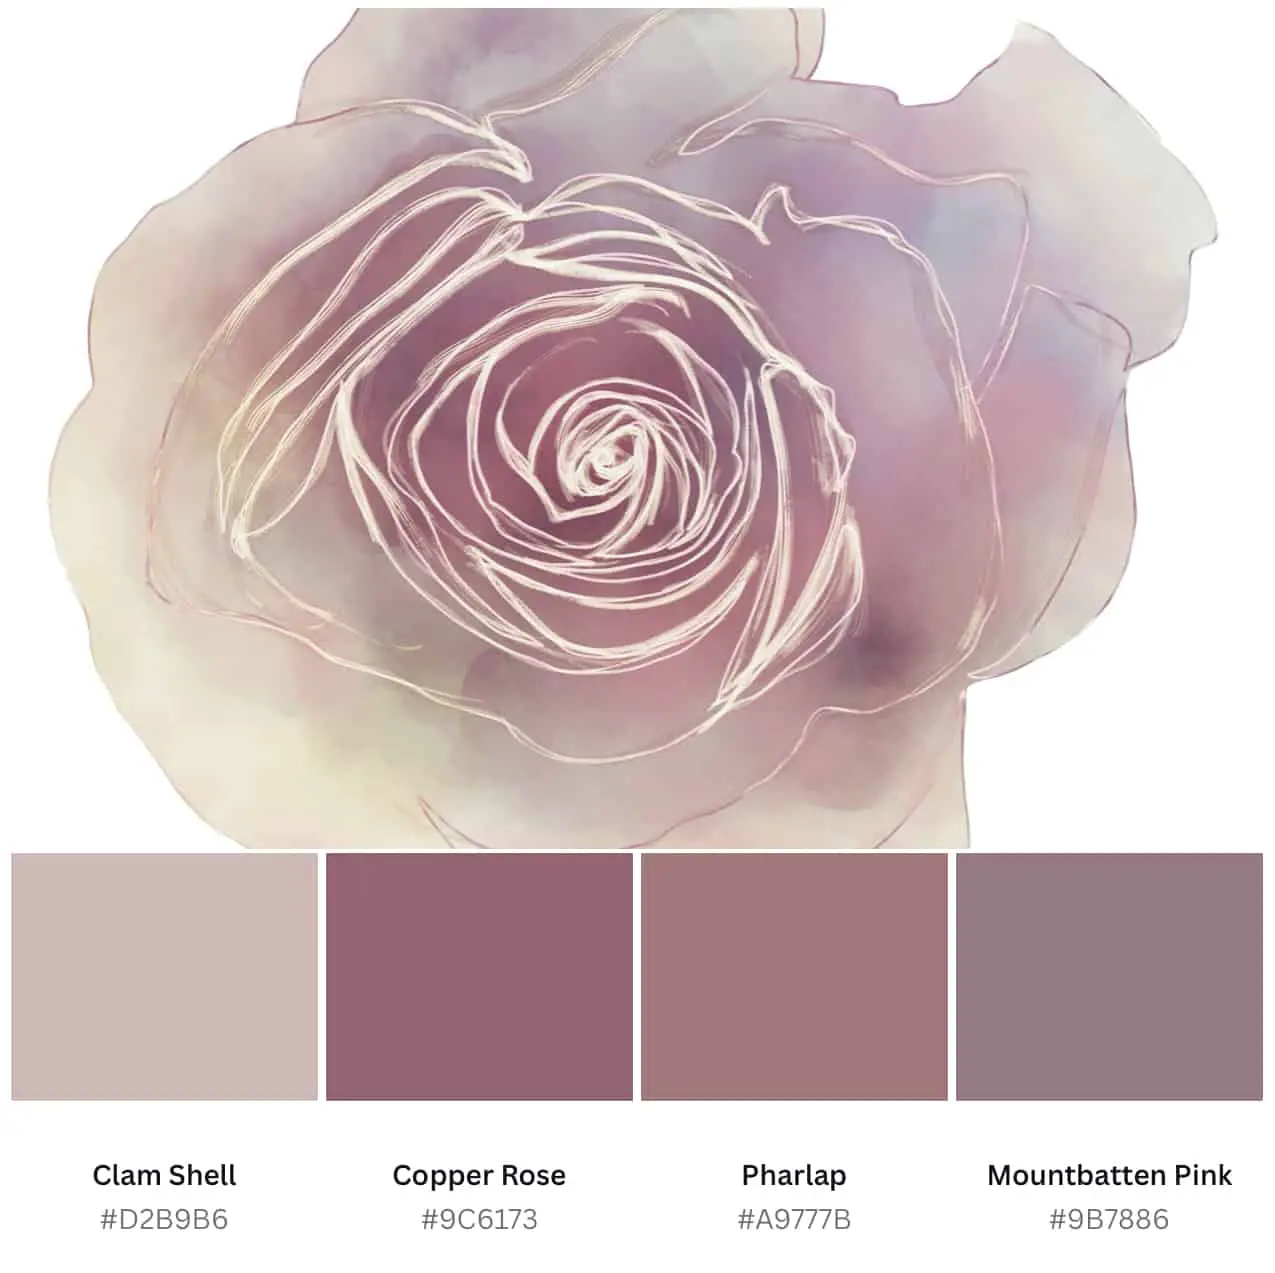 rose color palette